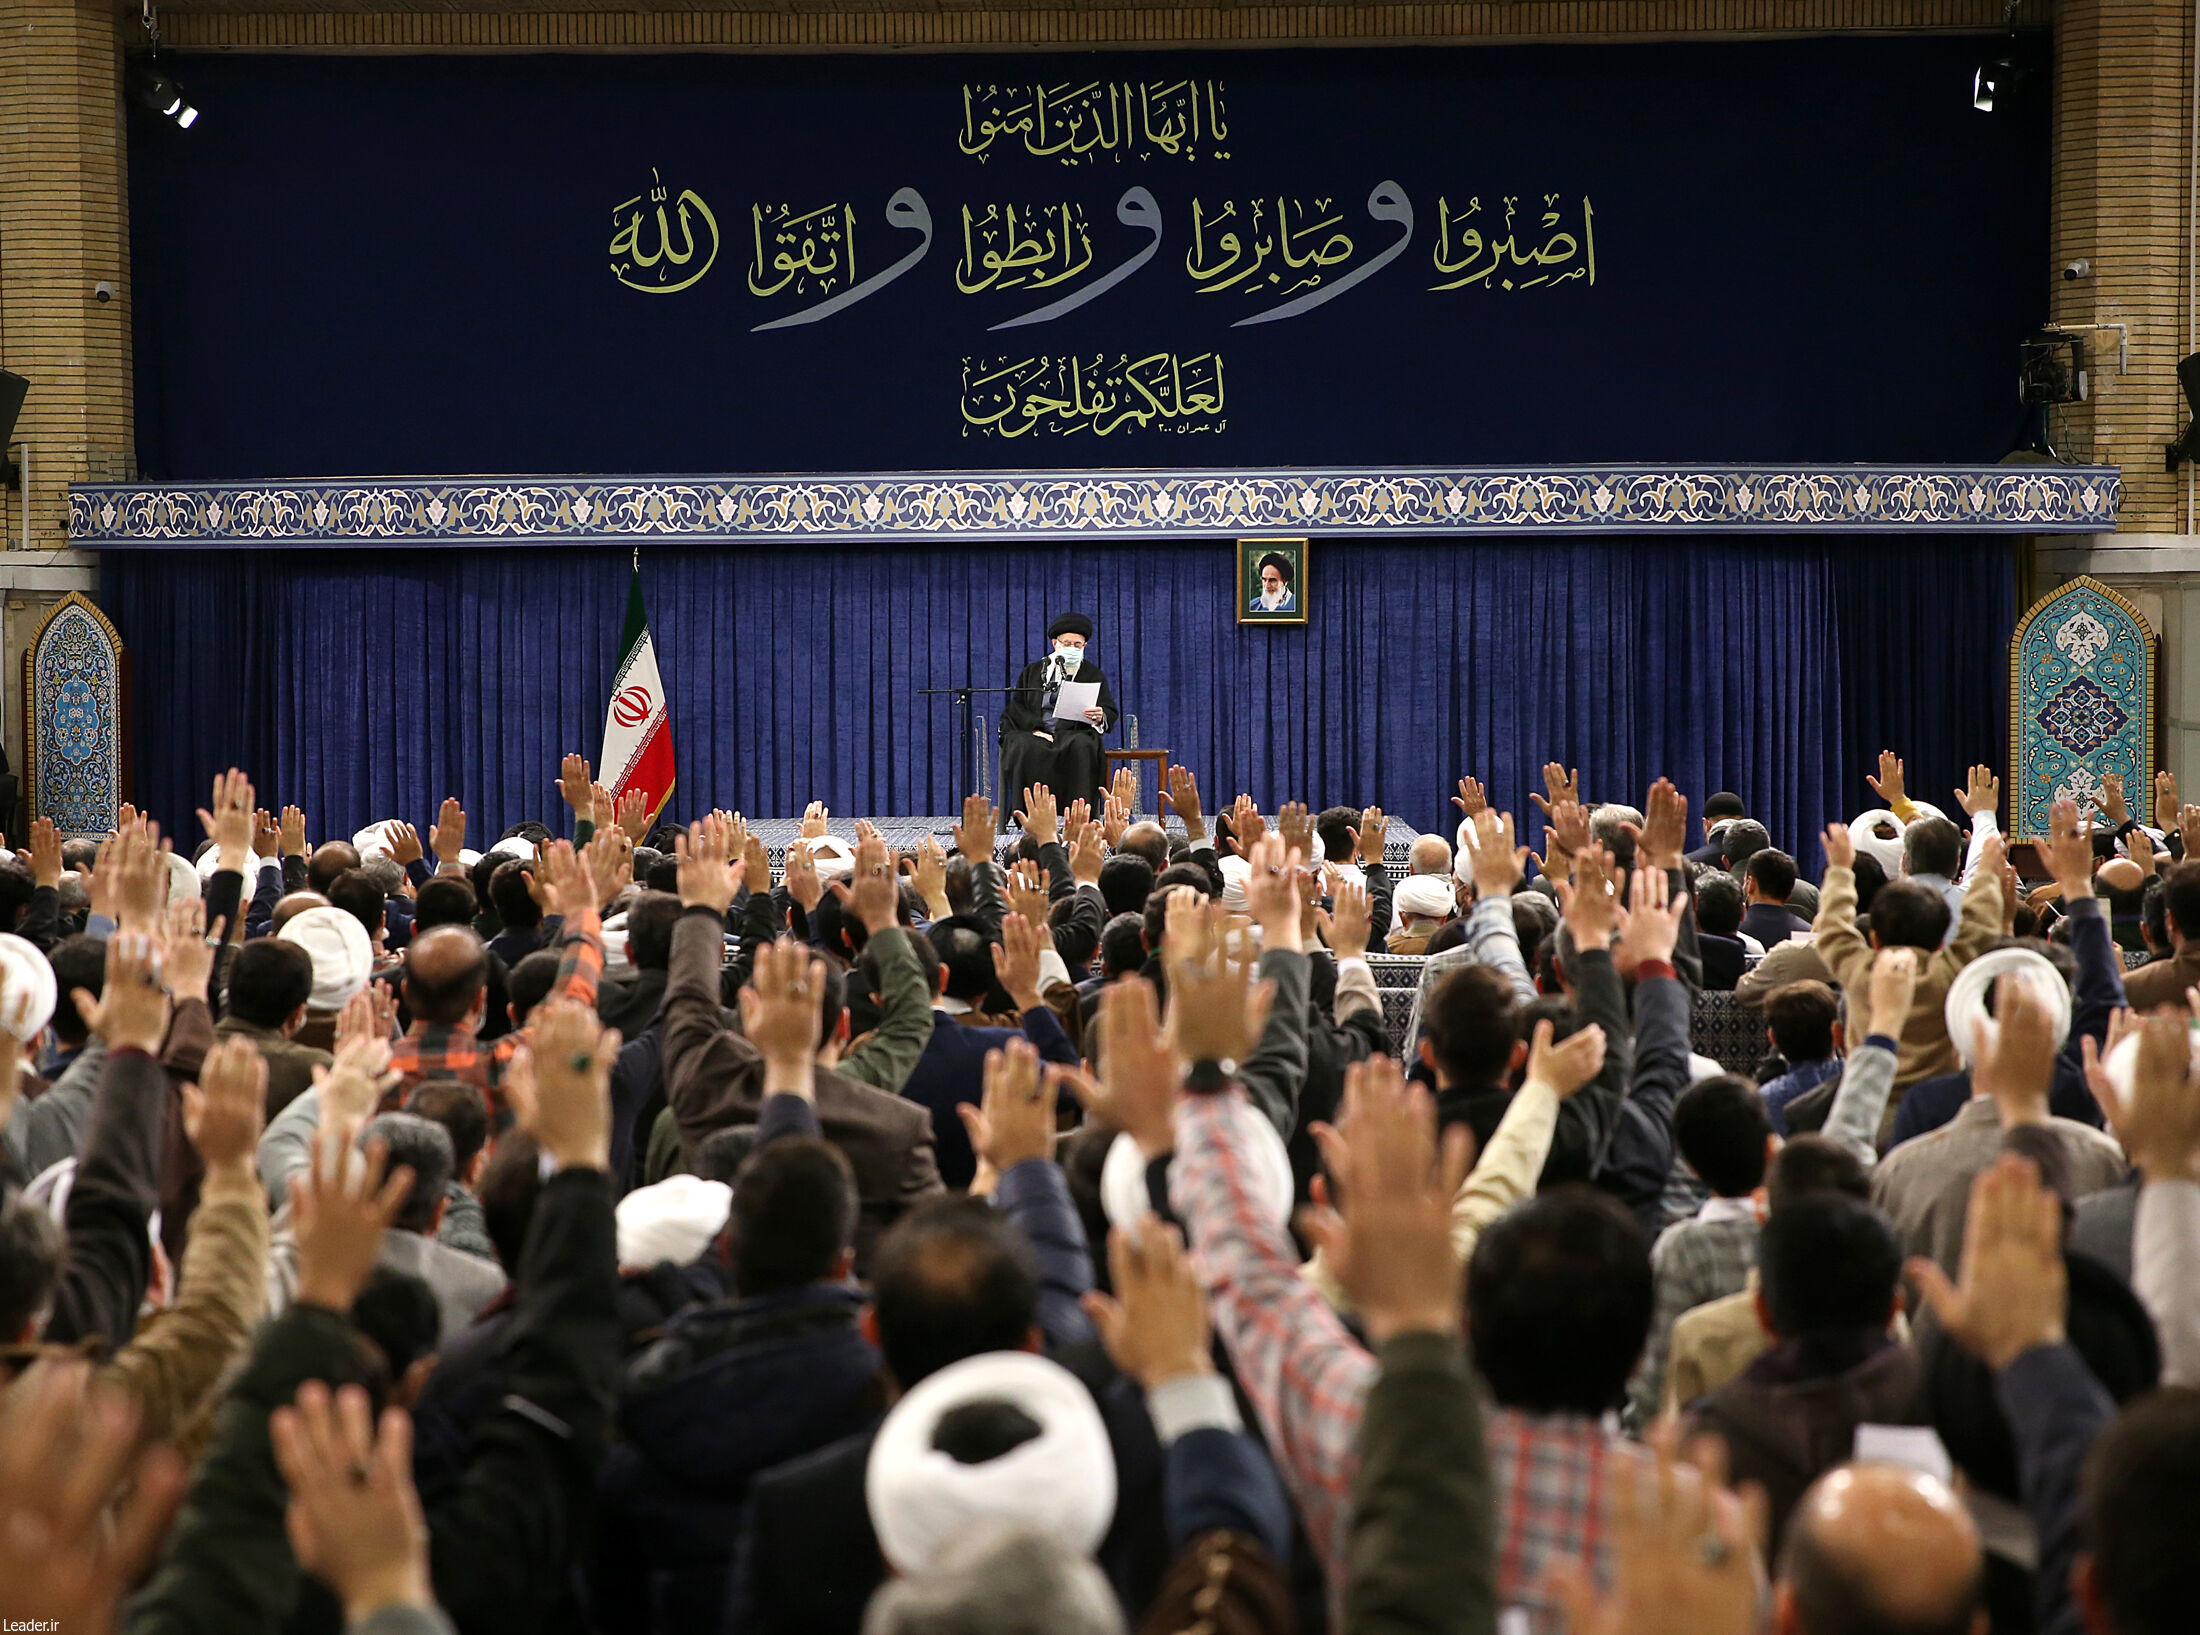 هویت تاریخی اسلام و ایران، ایران اسلامی است